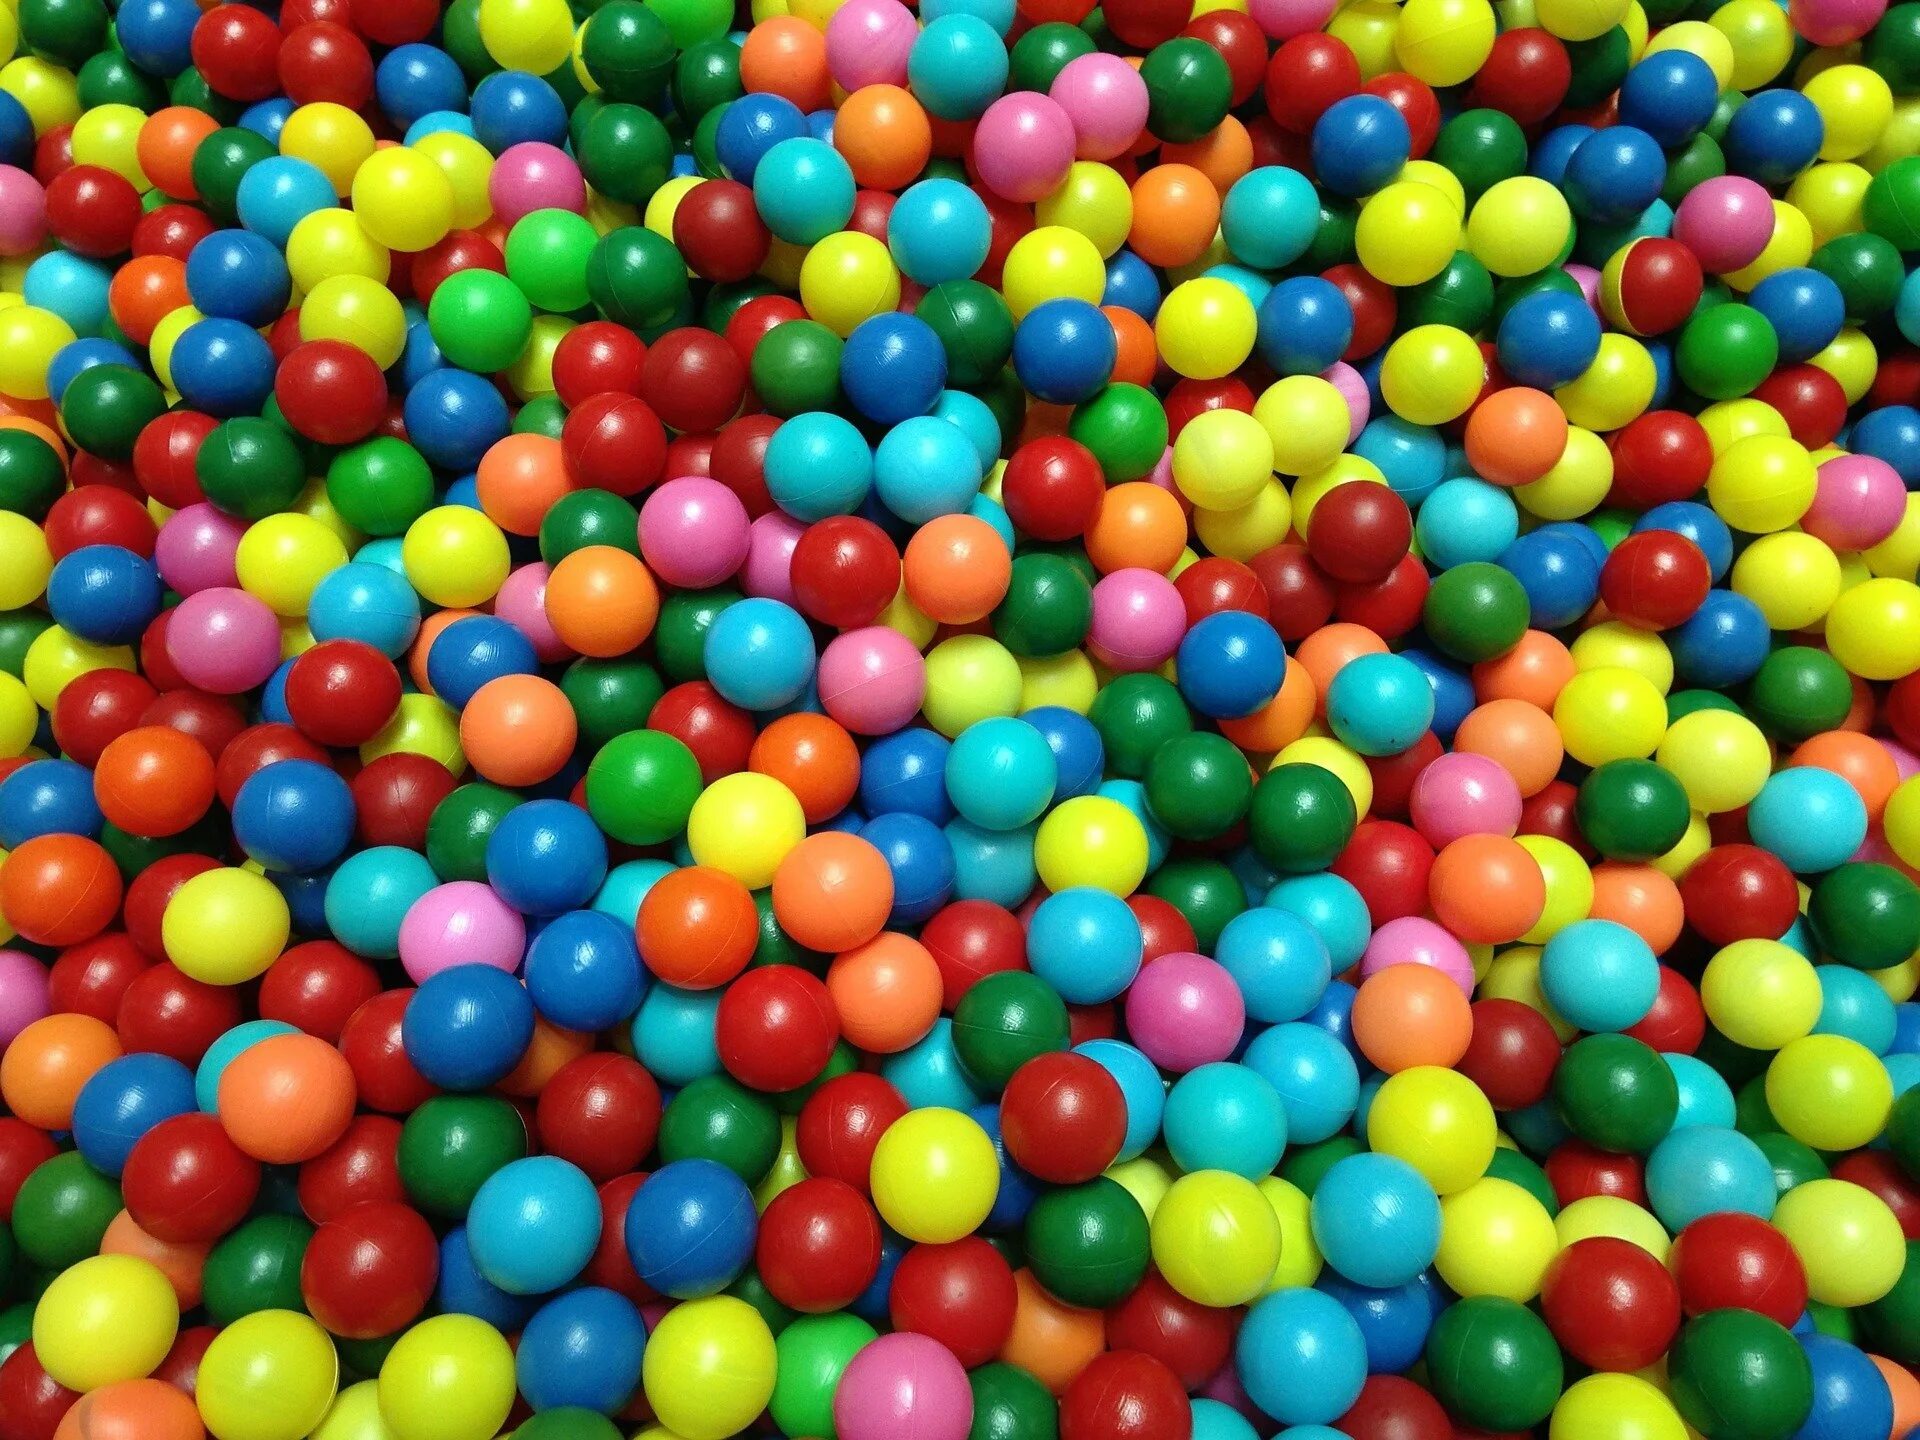 Текстура шаров. Цветные шары. Яркие шарики. Разноцветные шарики в бассейне. Бассейн с цветными шариками.